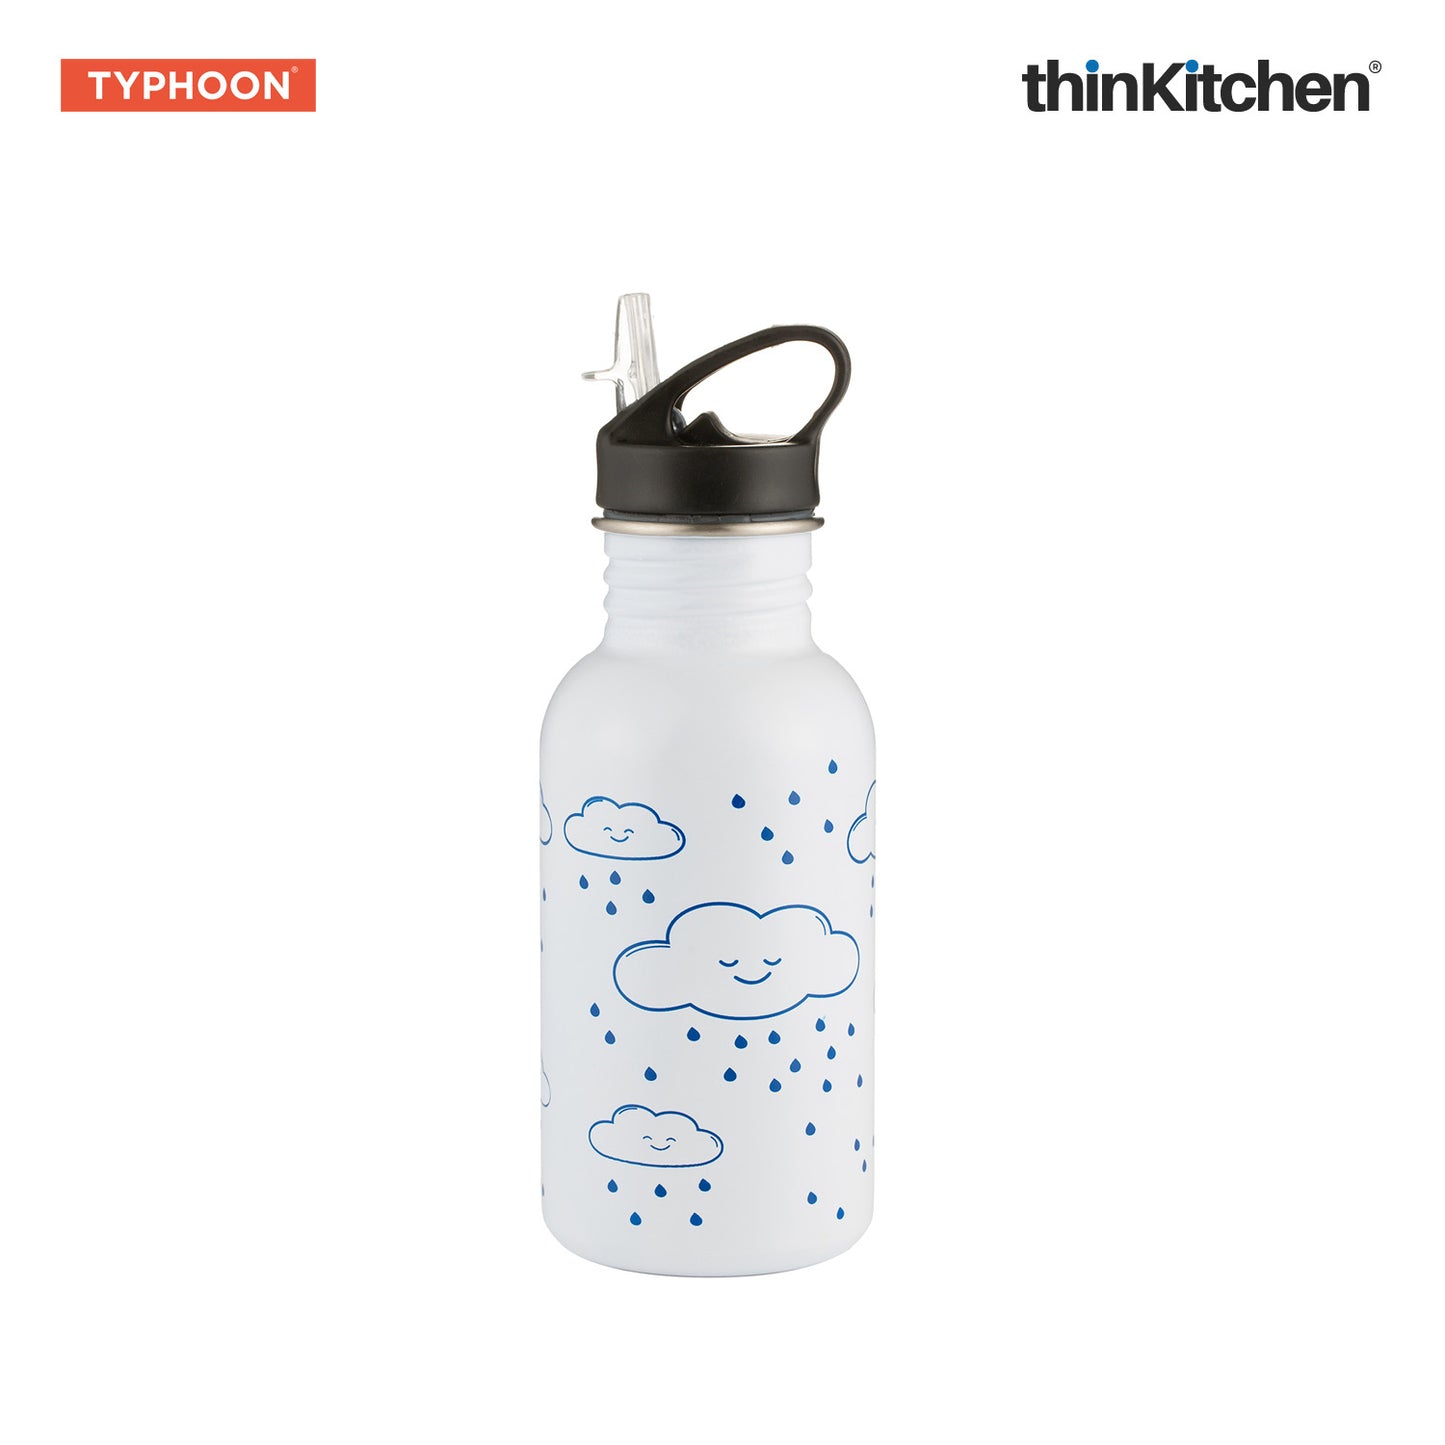 Typhoon Pure Color-change Cloud Bottle, 550ml